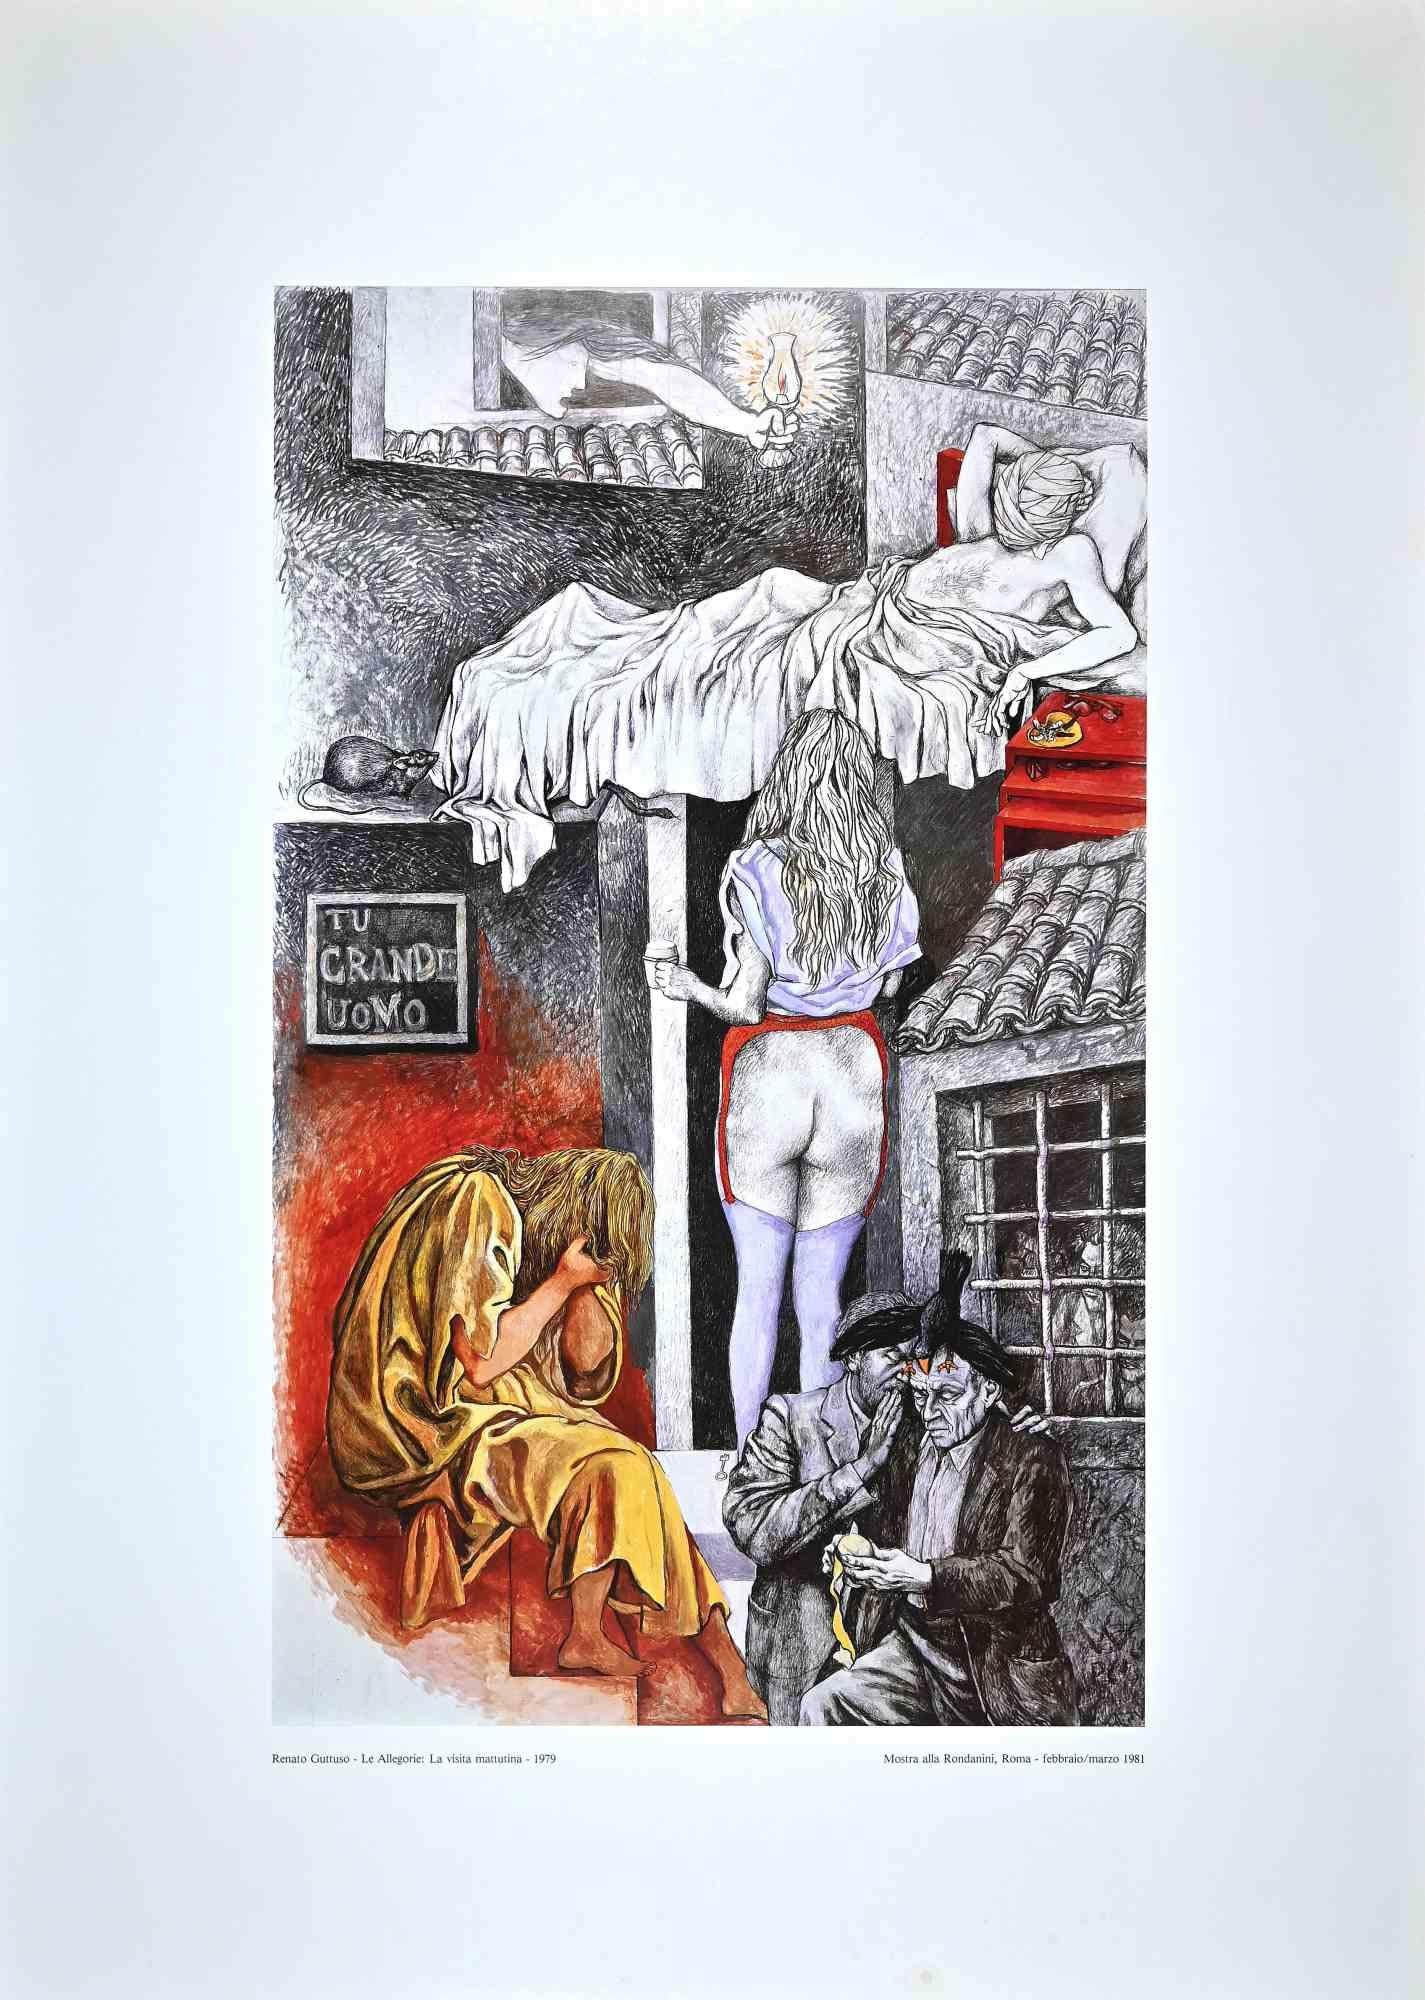 Allegories: the Morning Visit - Vintage Offset Print after Renato Guttuso - 1979